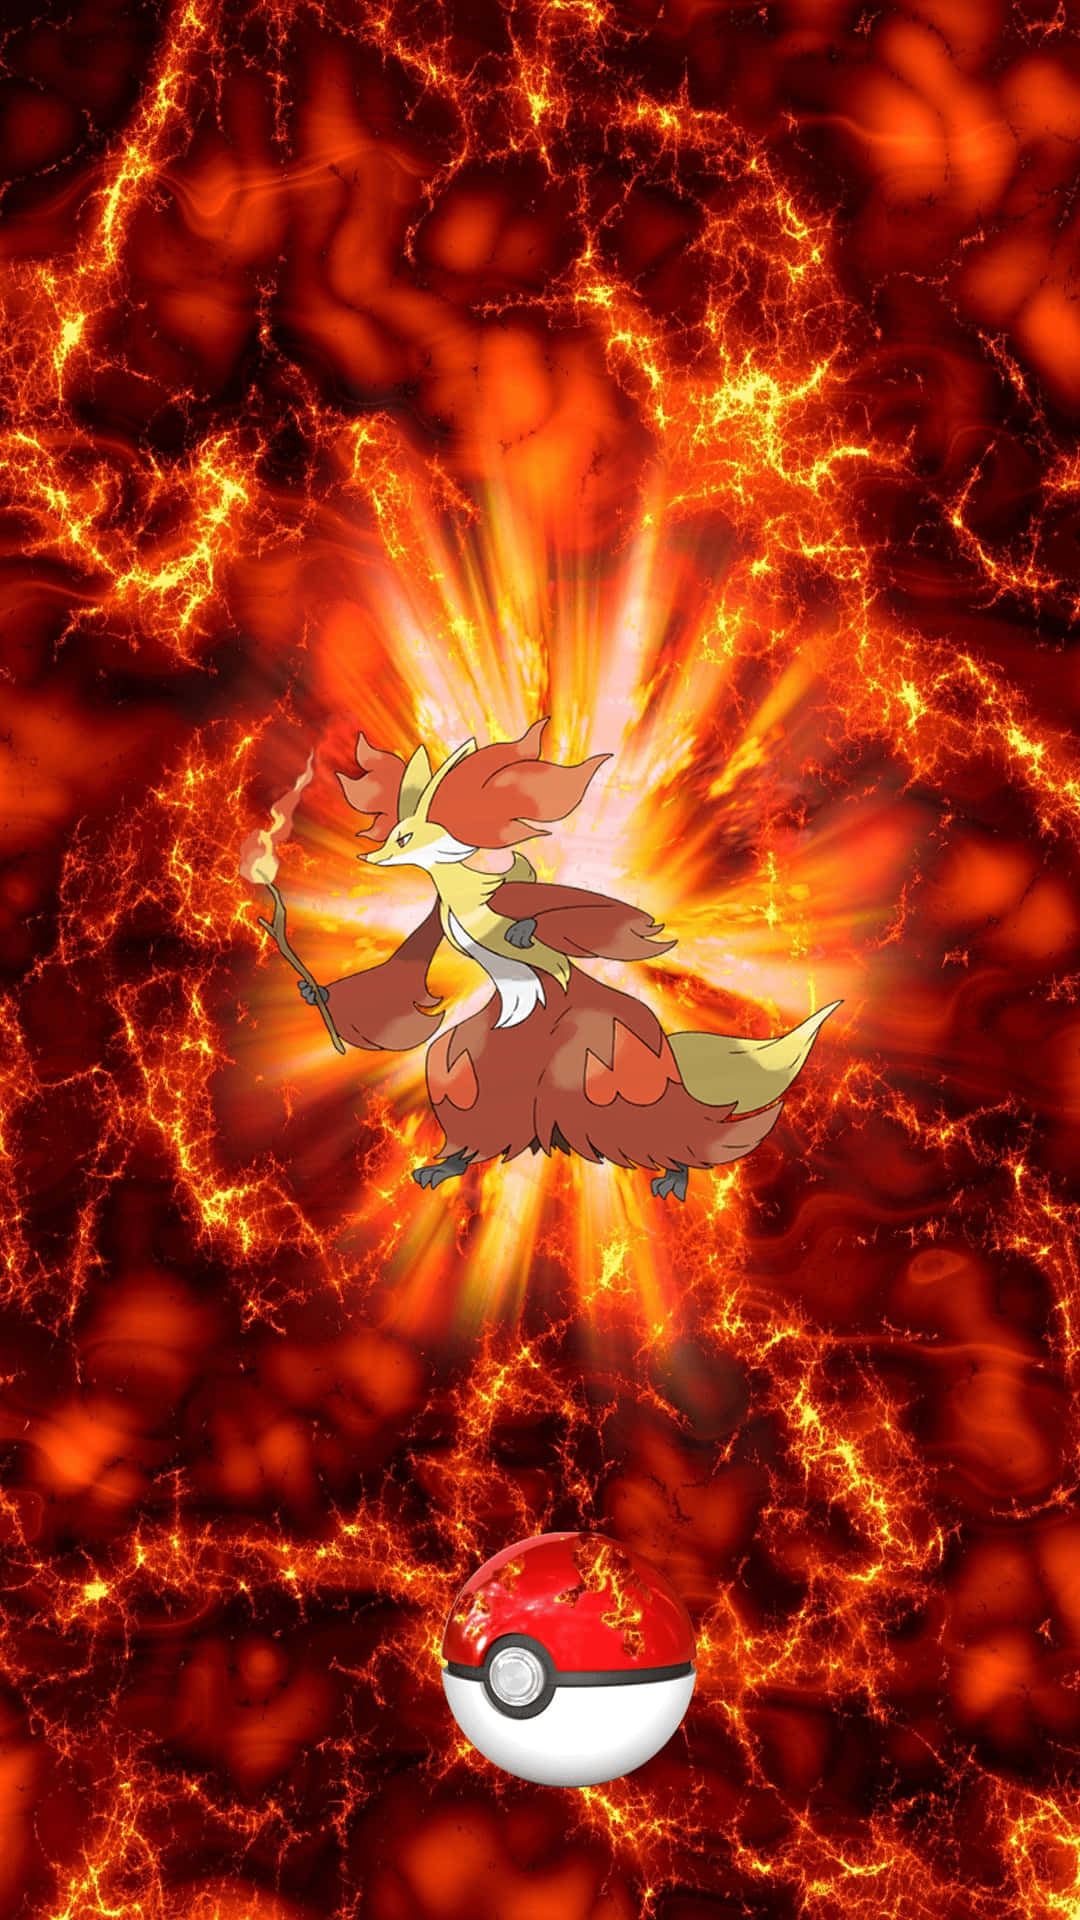 Braixen Using Fire Spin - Pokemon Fan Art Wallpaper